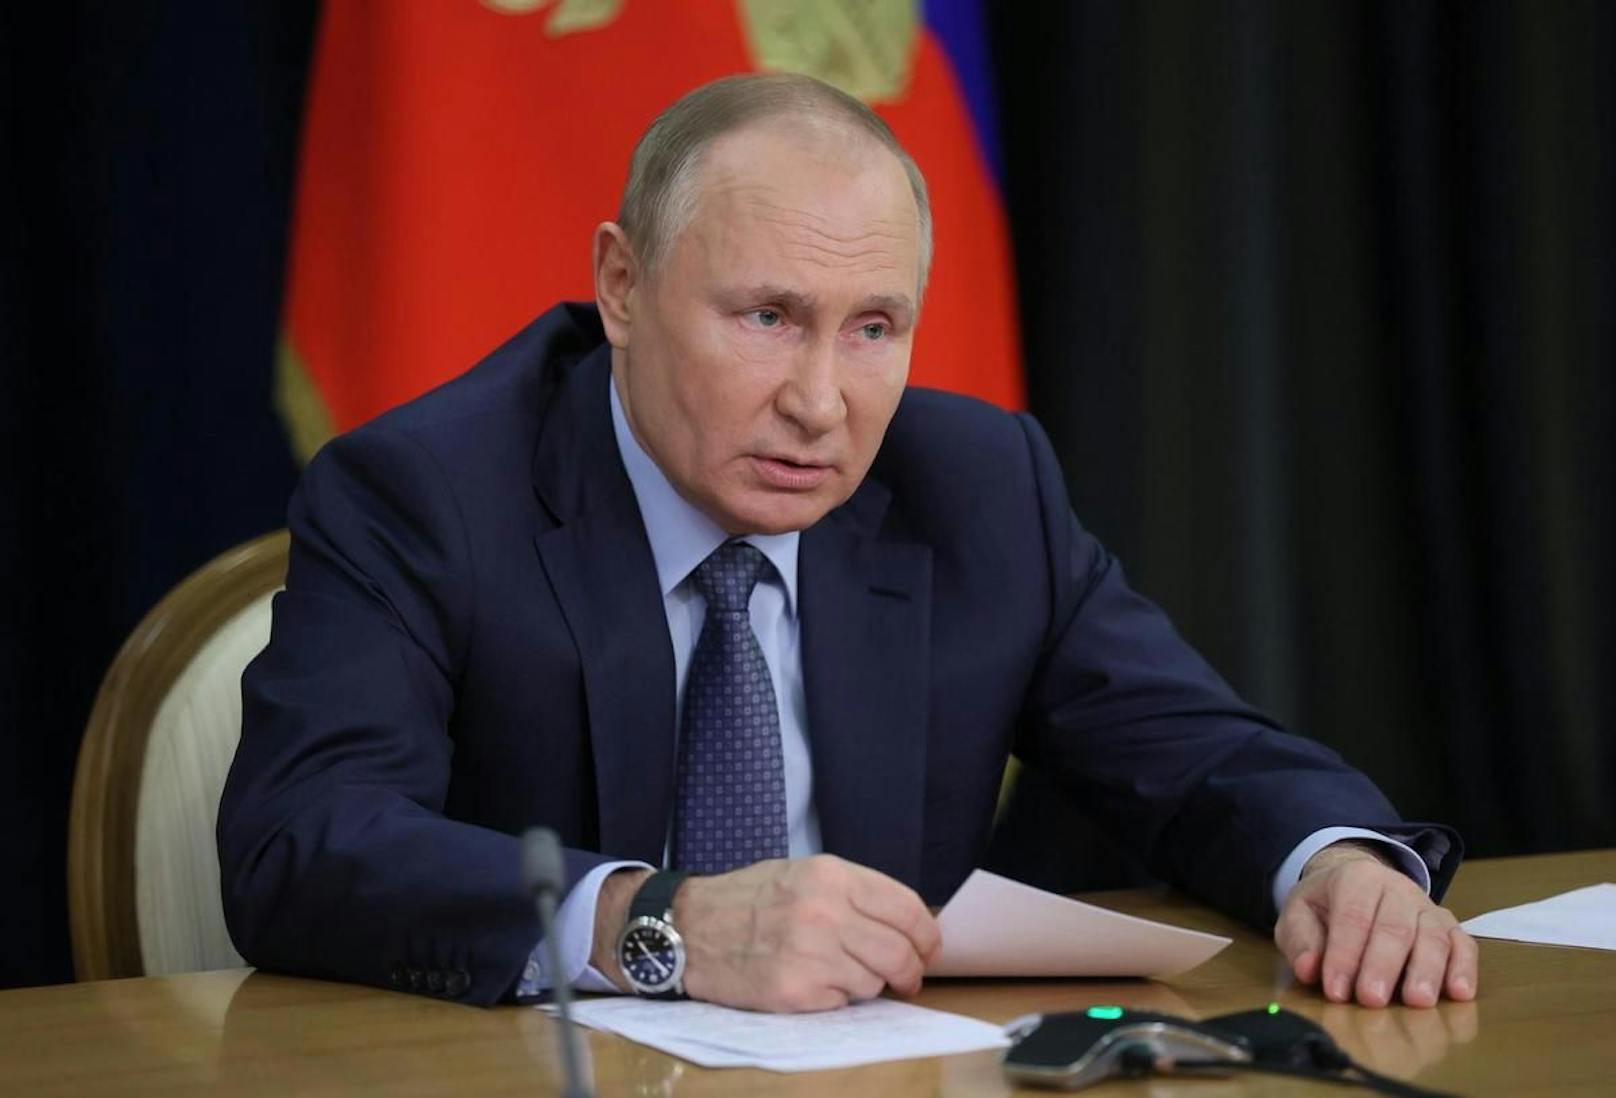 Putin bezeichnet in der Dokumentation das Ende des kommunistischen Machtblocks als "Tragödie" für die Russinnen und Russen.